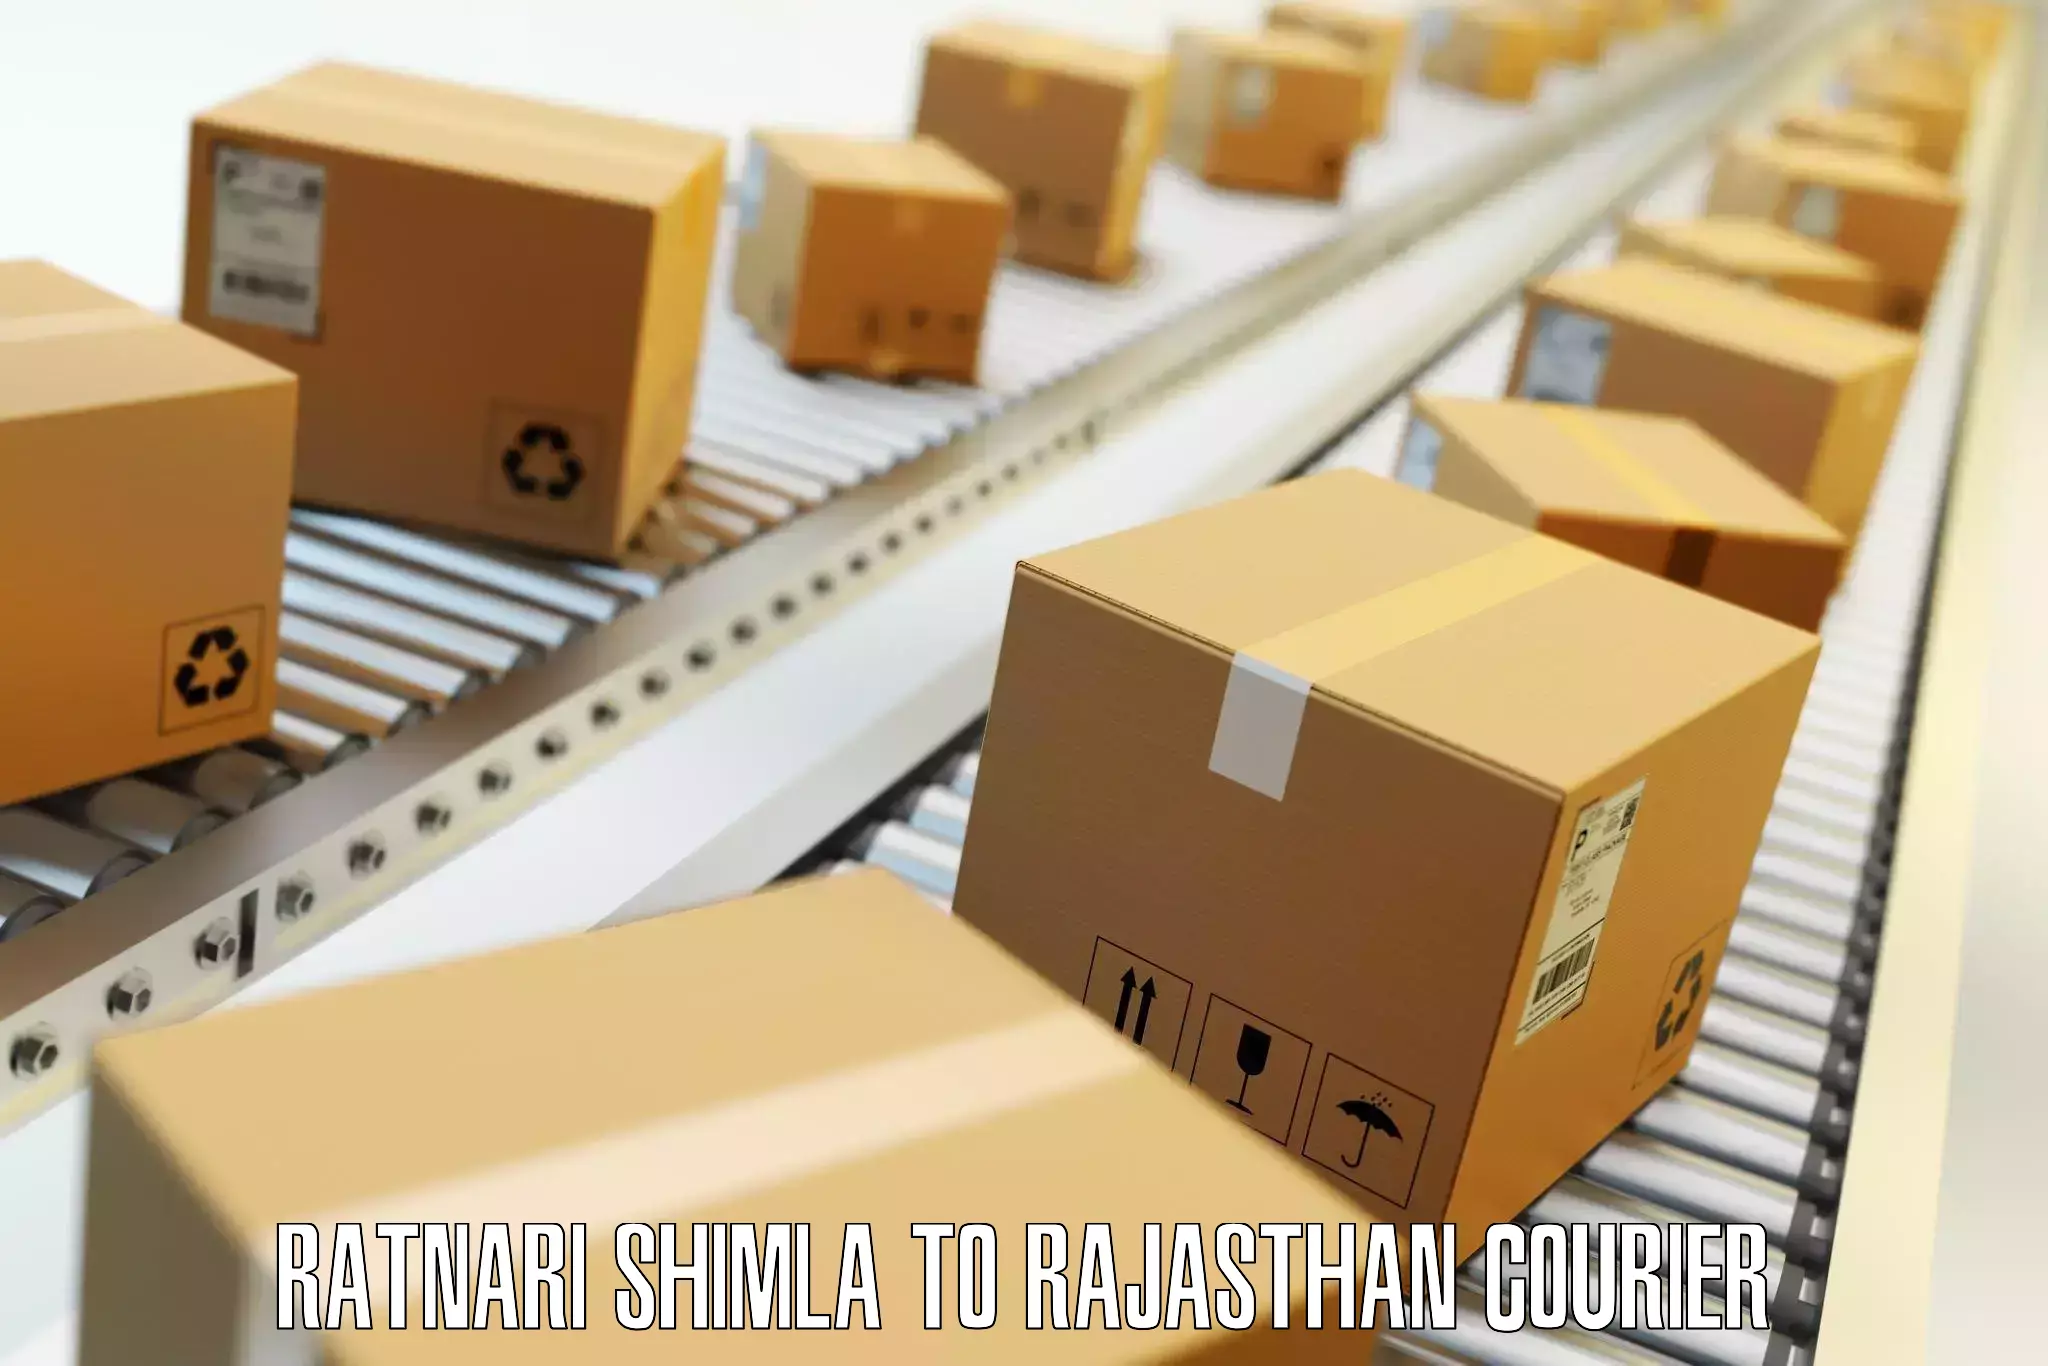 High-quality baggage shipment Ratnari Shimla to Rajasthan